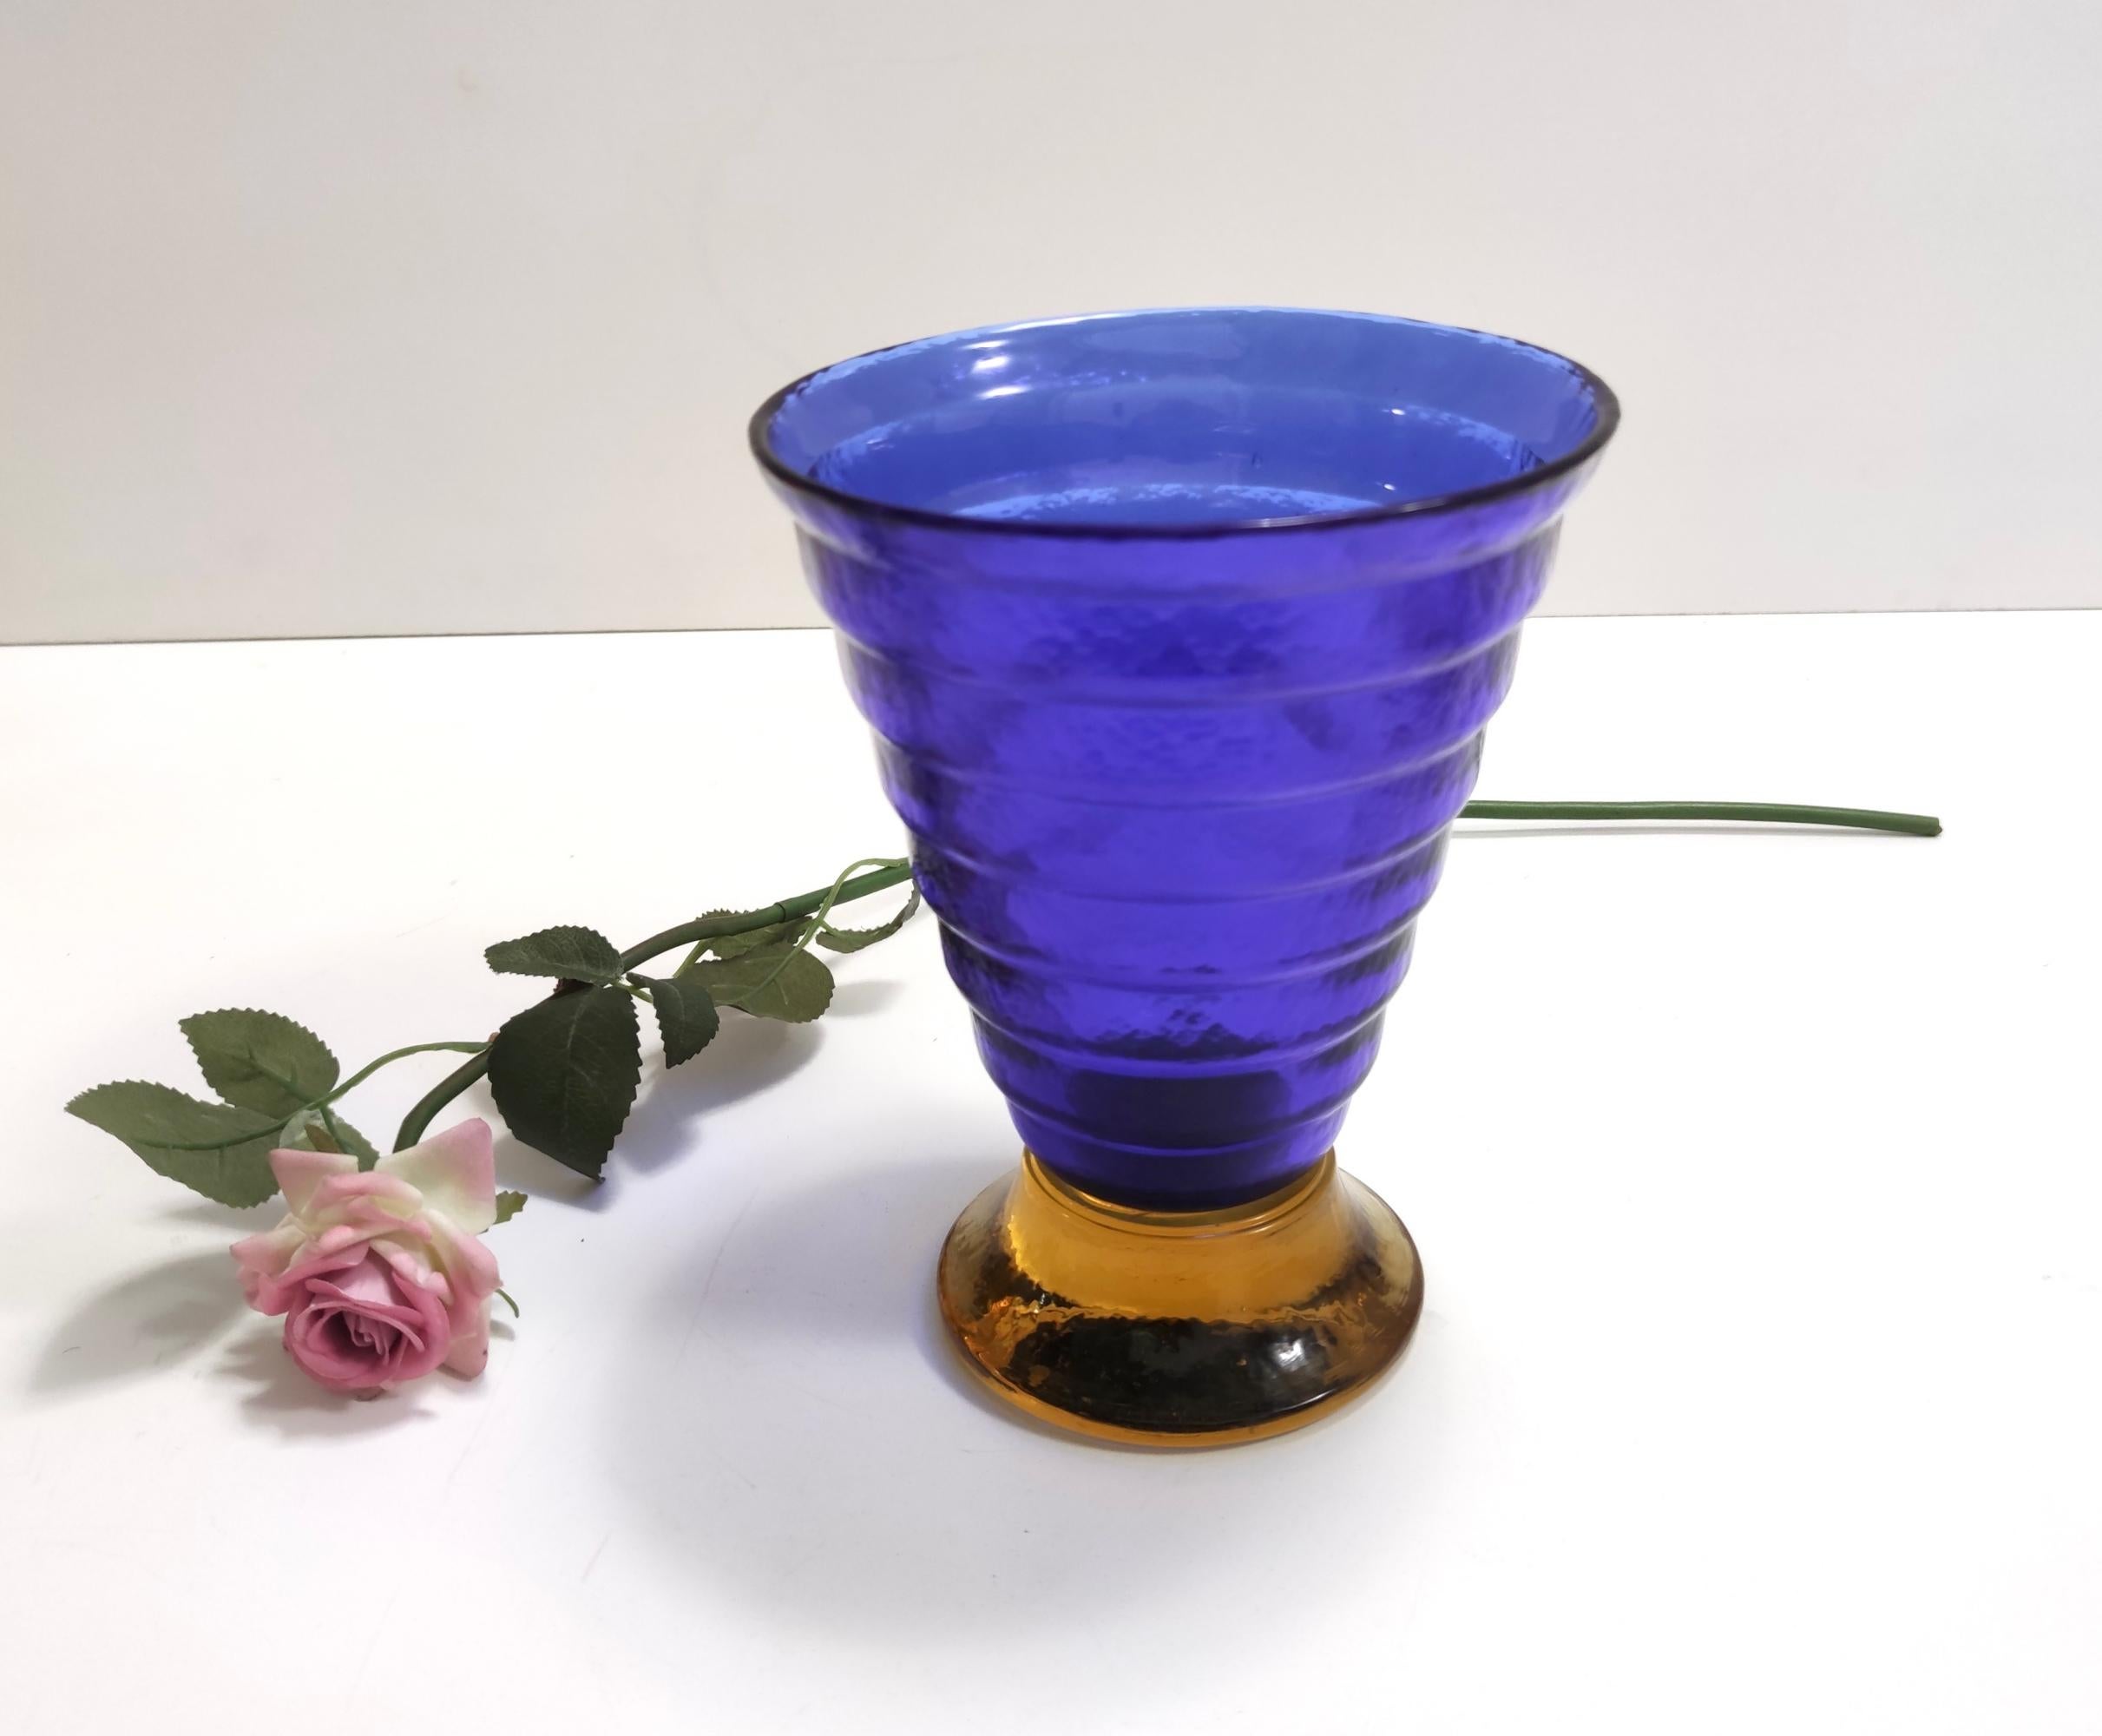 Fabriqué en Italie, à Murano, dans les années 1970-1980.
Ce vase rare et élégant est réalisé en verre de Murano bleu et jaune.
Son style est typique des années 70-80. 
Ce vase est marqué Cá dei Vetrai.
Le verre présente des bulles et des